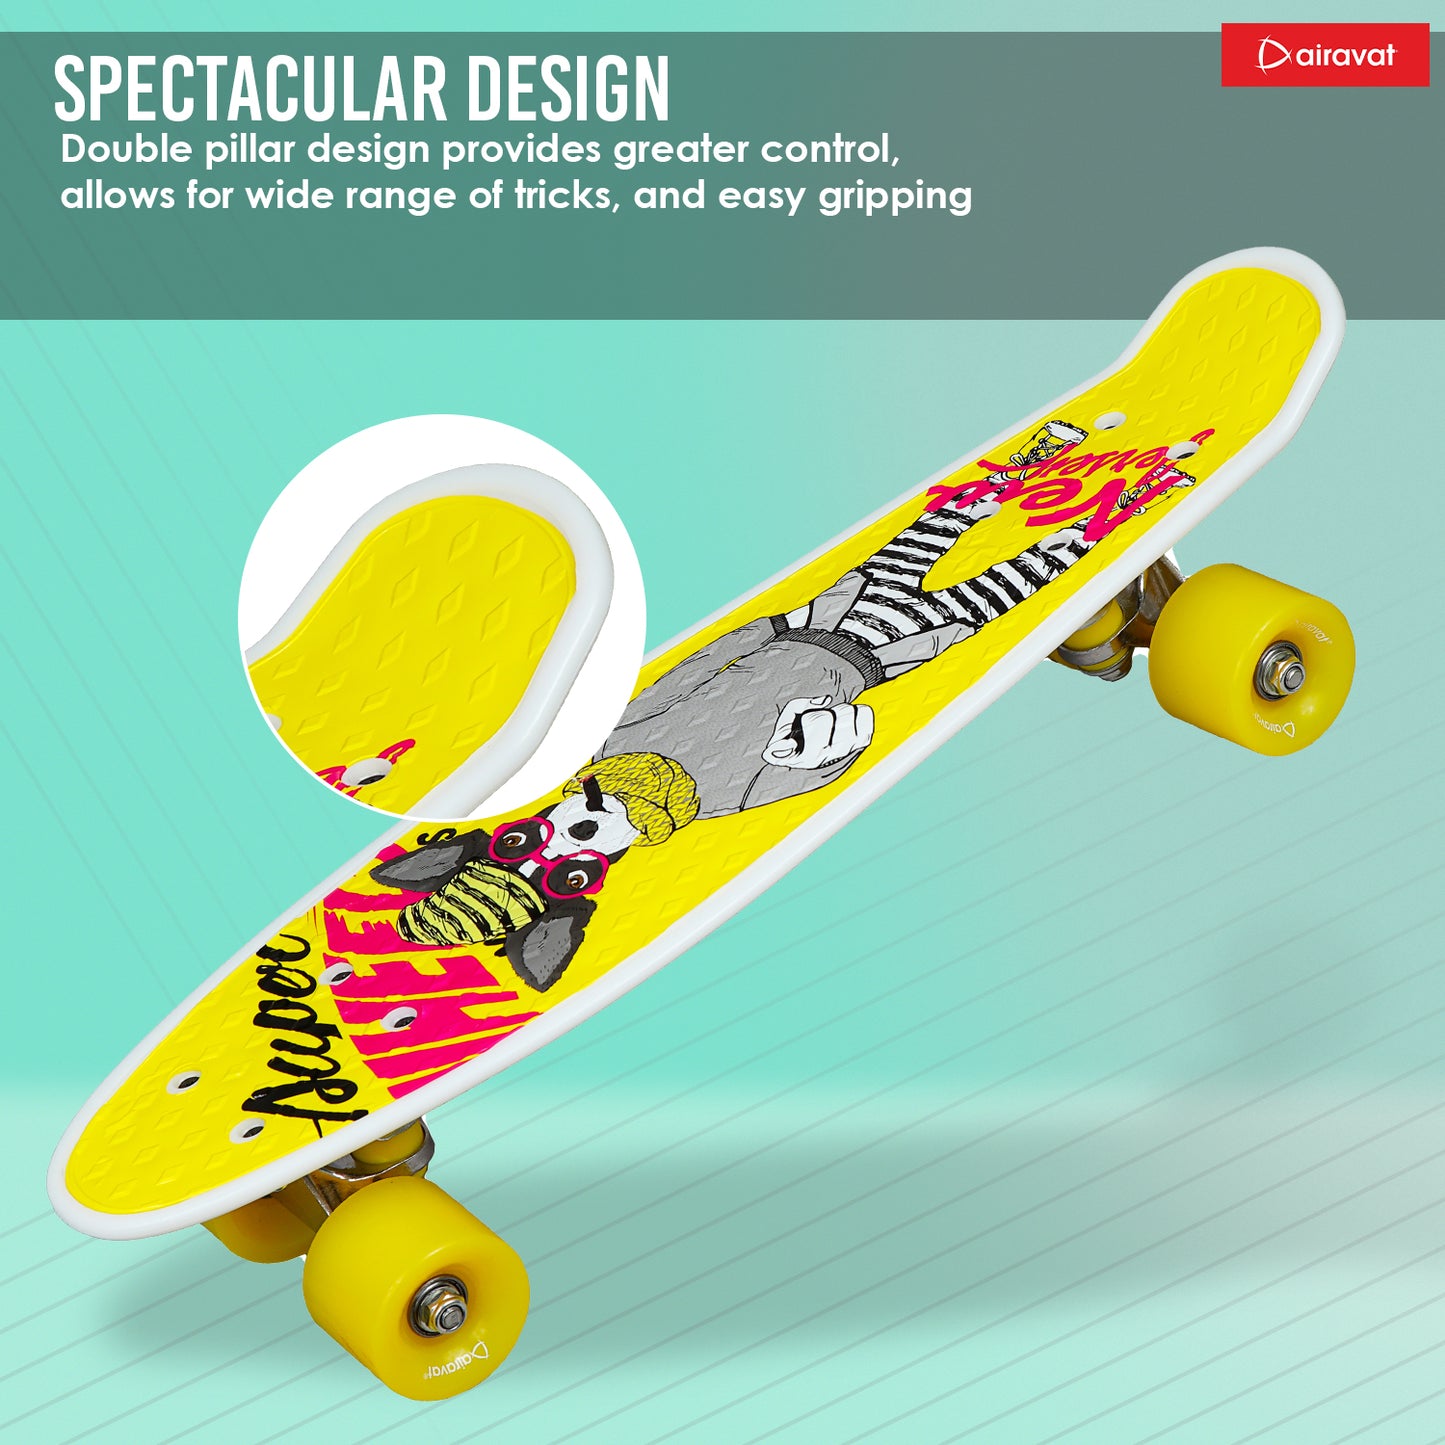 7811-skateboard-style-7-spectacular-design